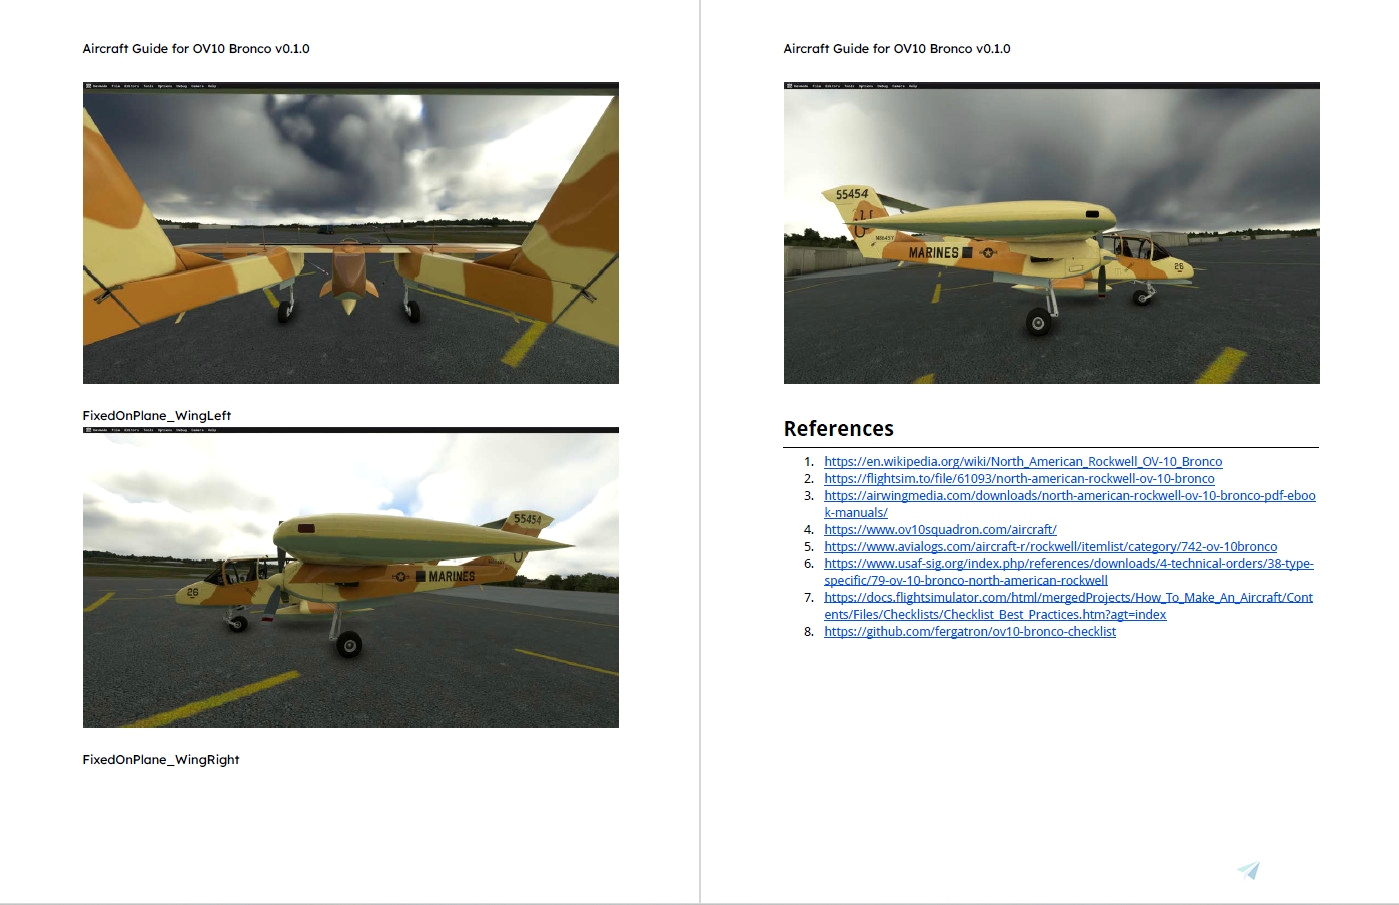 Microsoft Flight Simulator 1.0 - Wikipedia